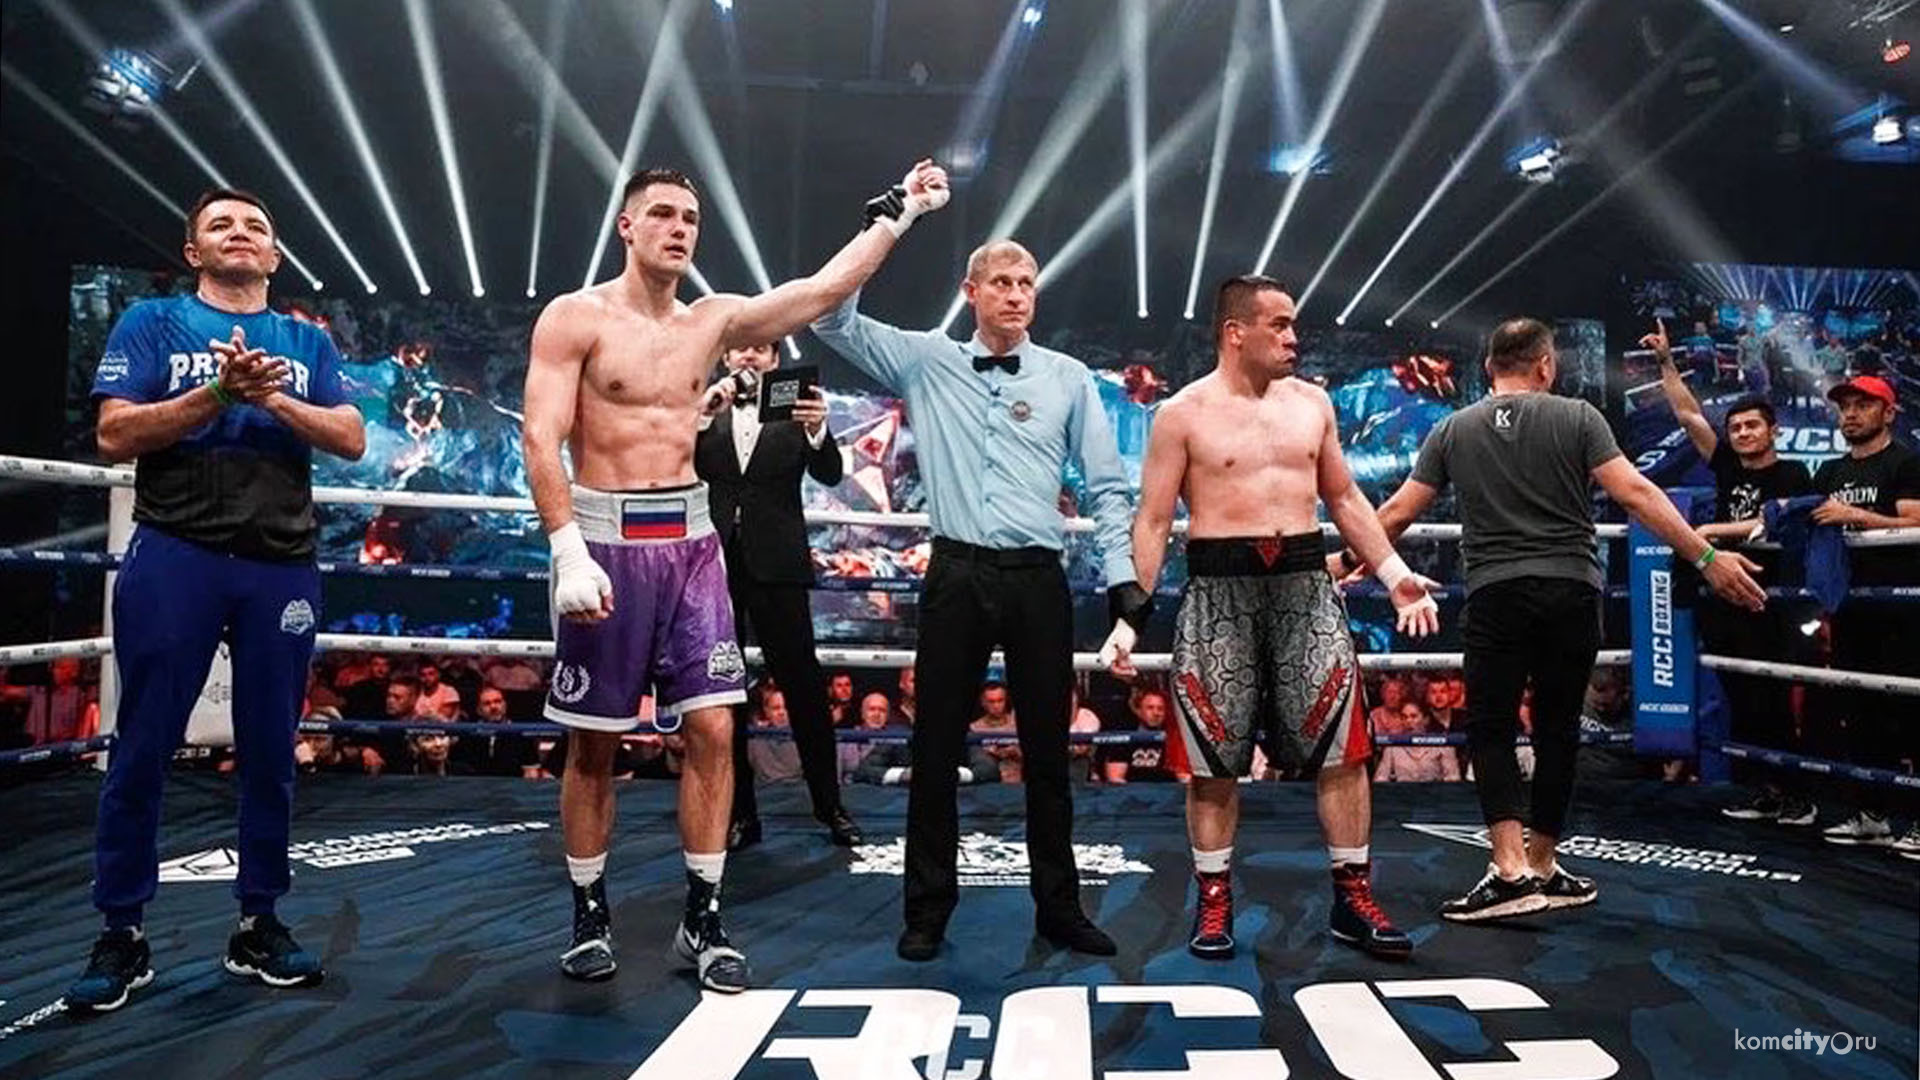 Комсомольский боксёр Савелий Садома выиграл свой первый профессиональный бой на турнире в Екатеринбурге